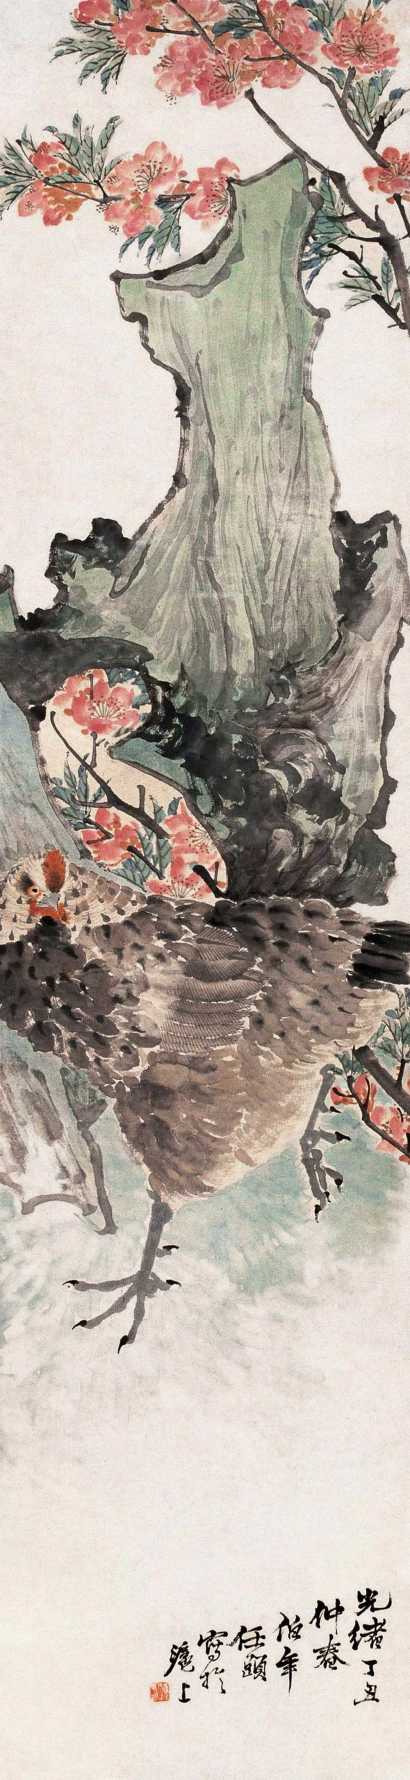 任伯年 丁丑（1877年作） 桃花母鸡图 立轴